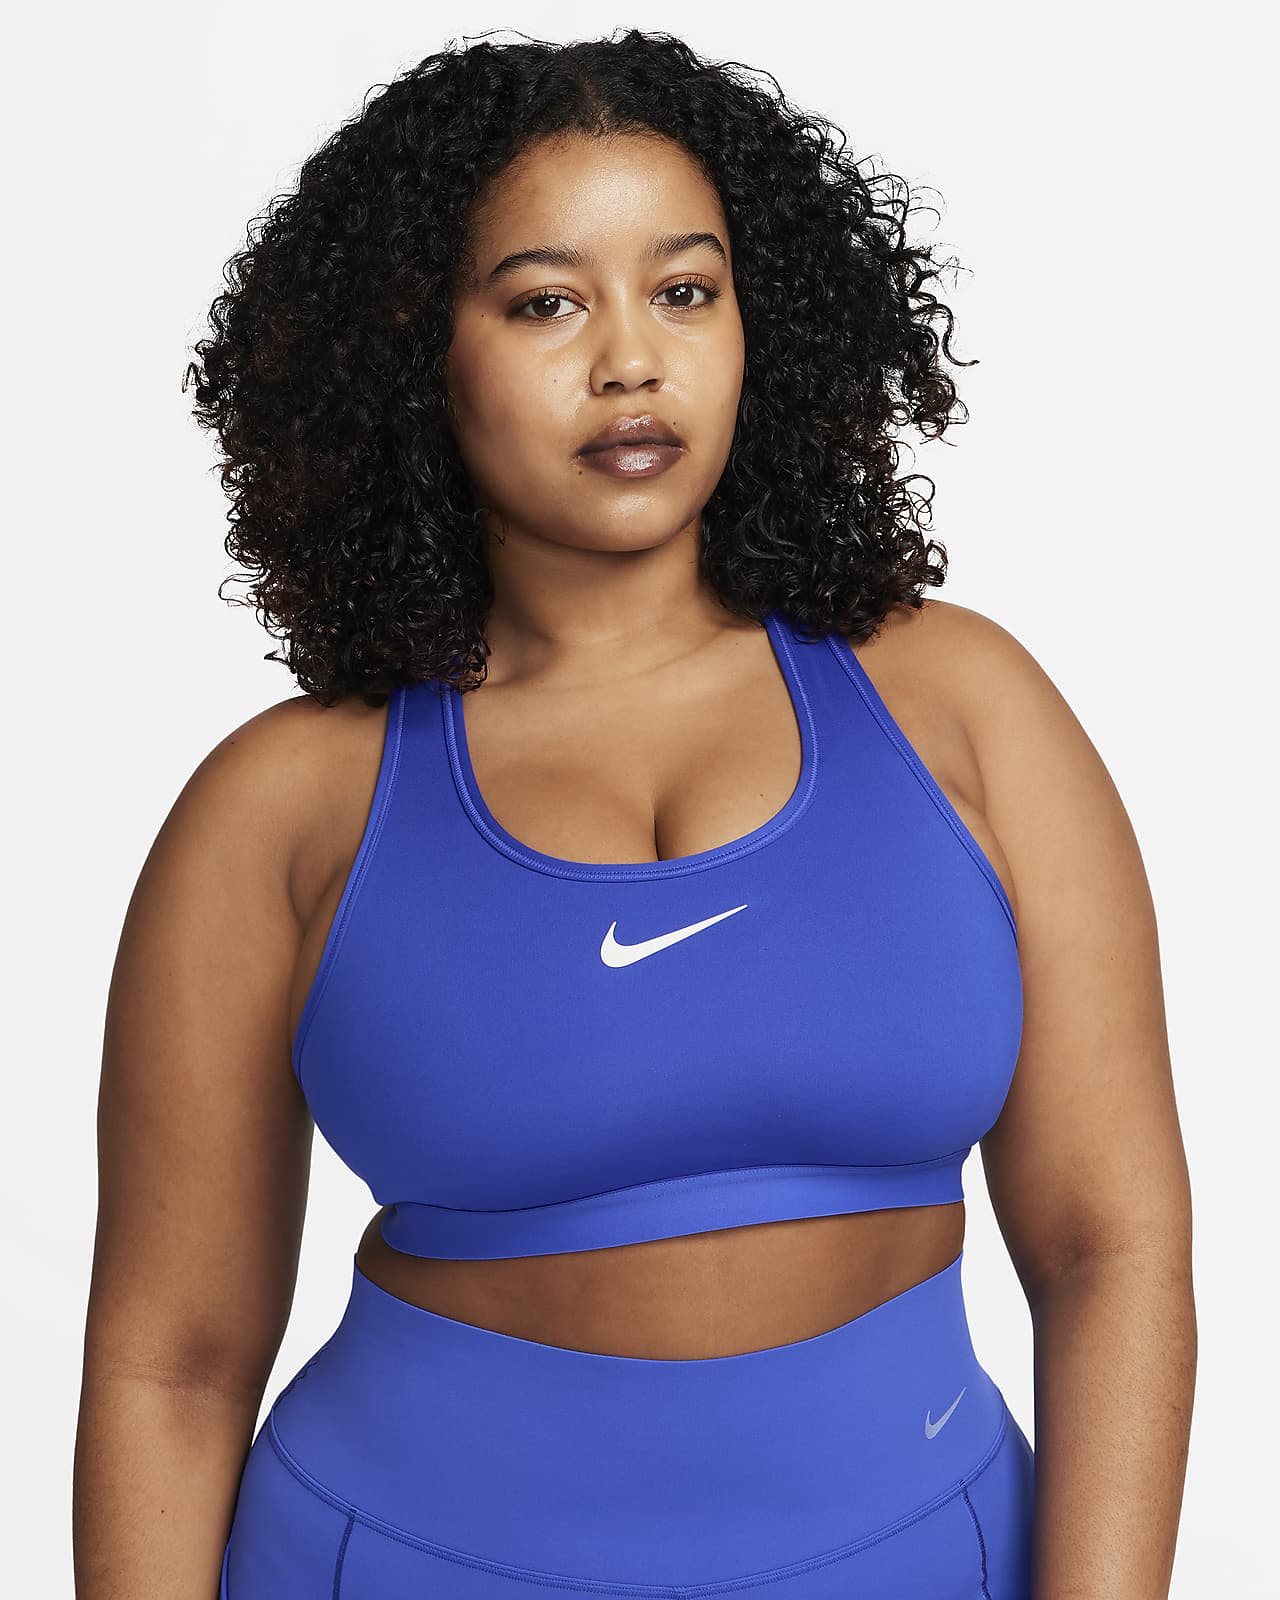 Nike Fierce Starglass Women's Sports Bra  Sports bra, Women's sports bras,  Sports women